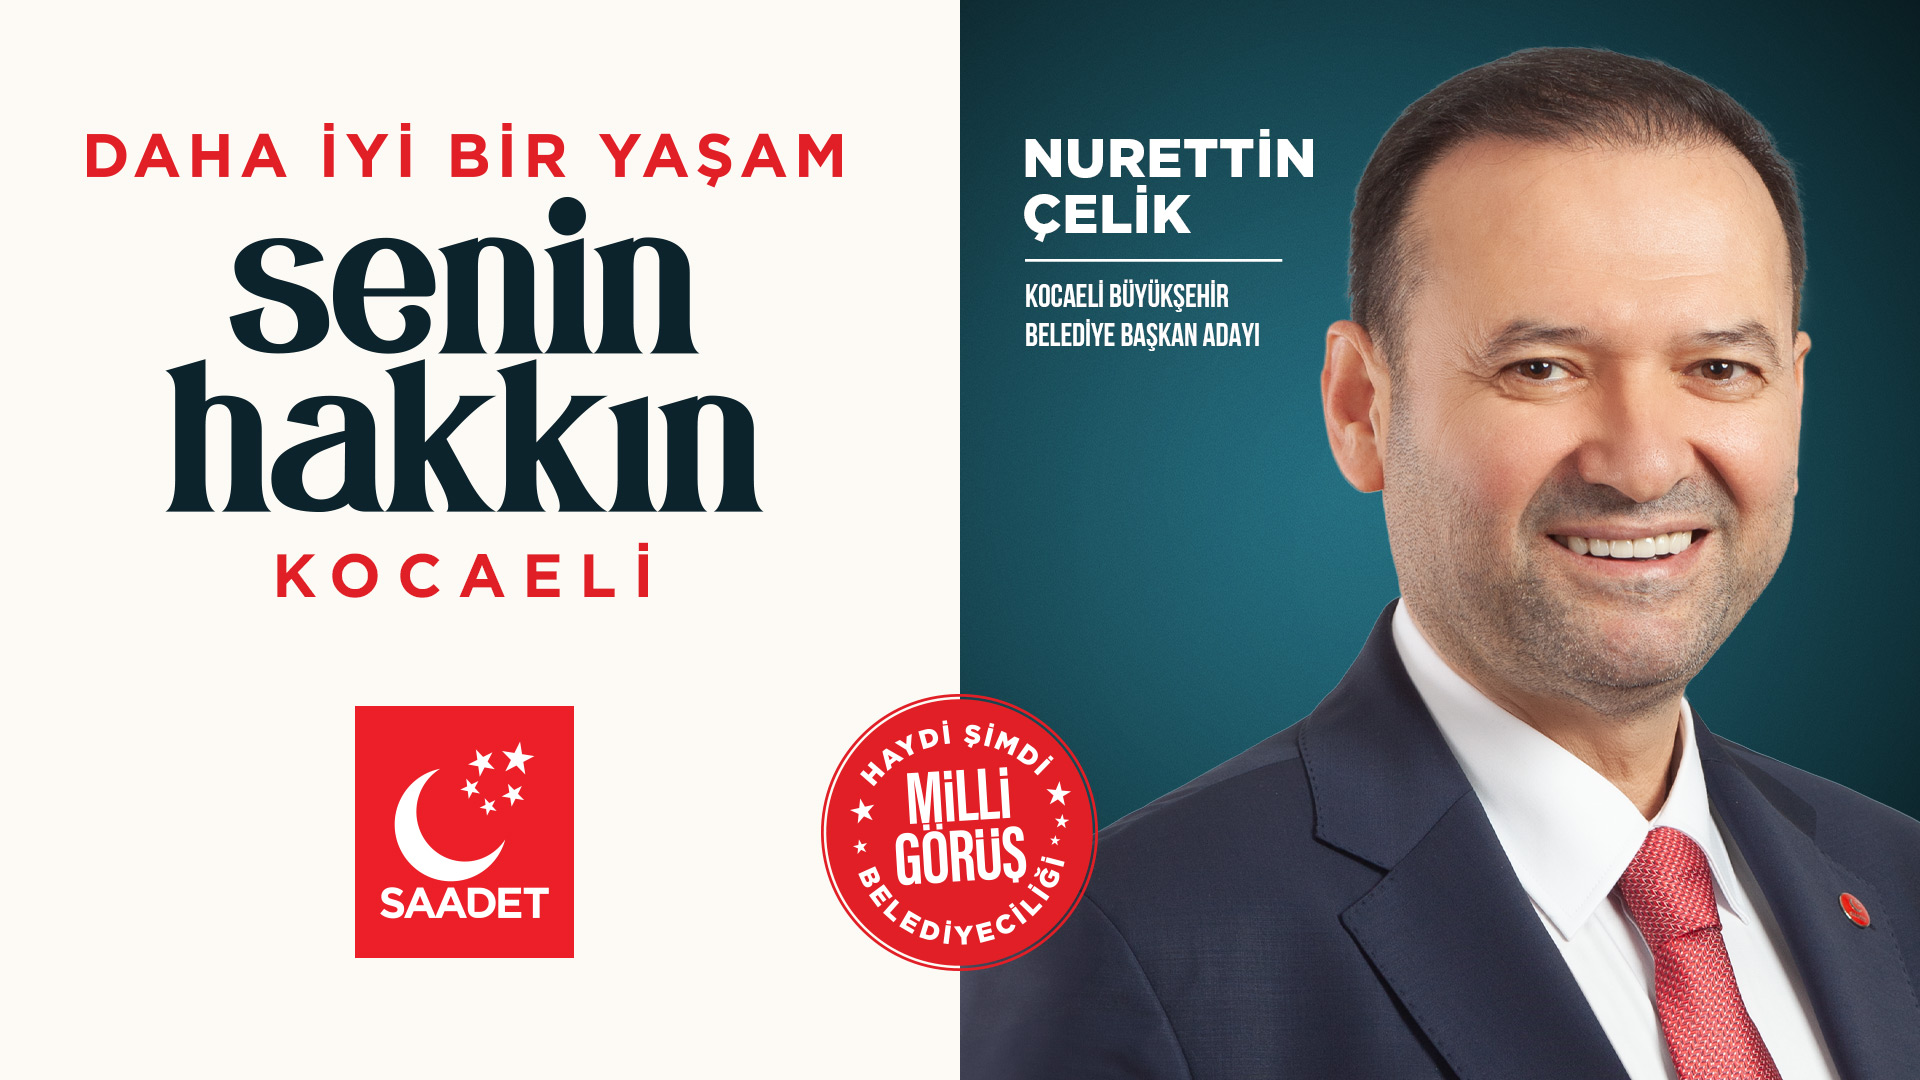 Saadet Partisi, Kocaeli Büyükşehir Belediye Başkanlığı için Nurettin Çelik'i aday gösterdi